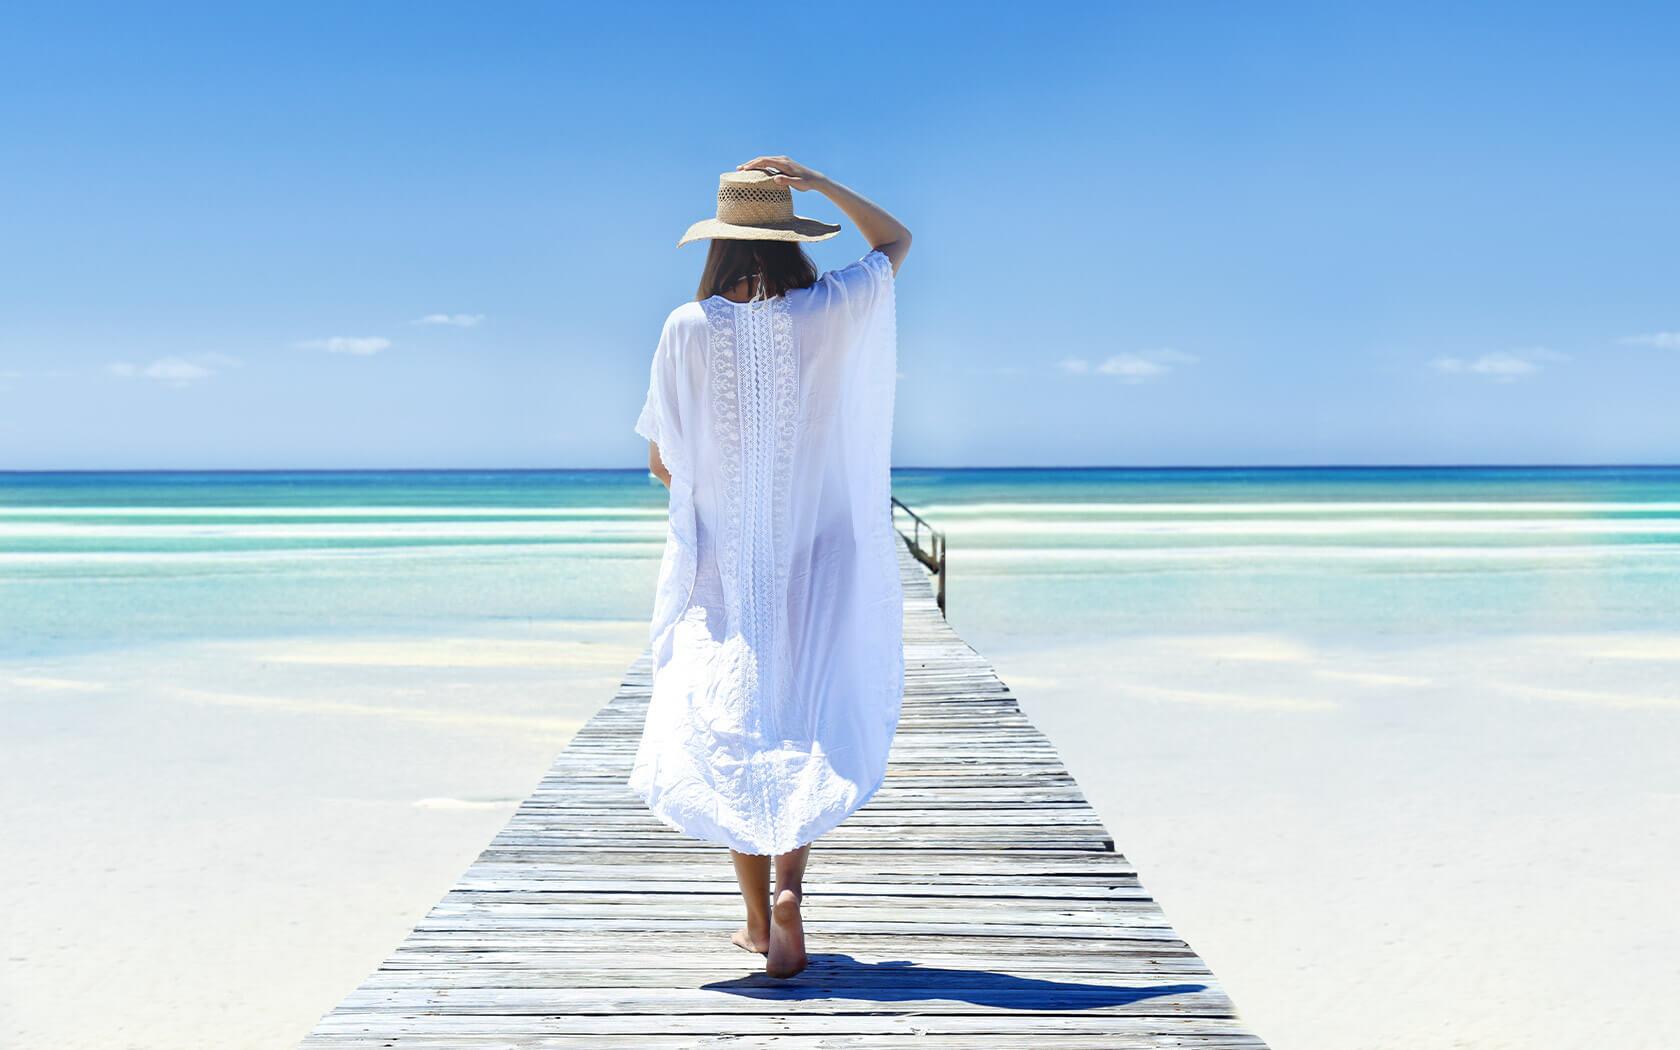 woman in straw hat and sundress walking on beach boardwalk